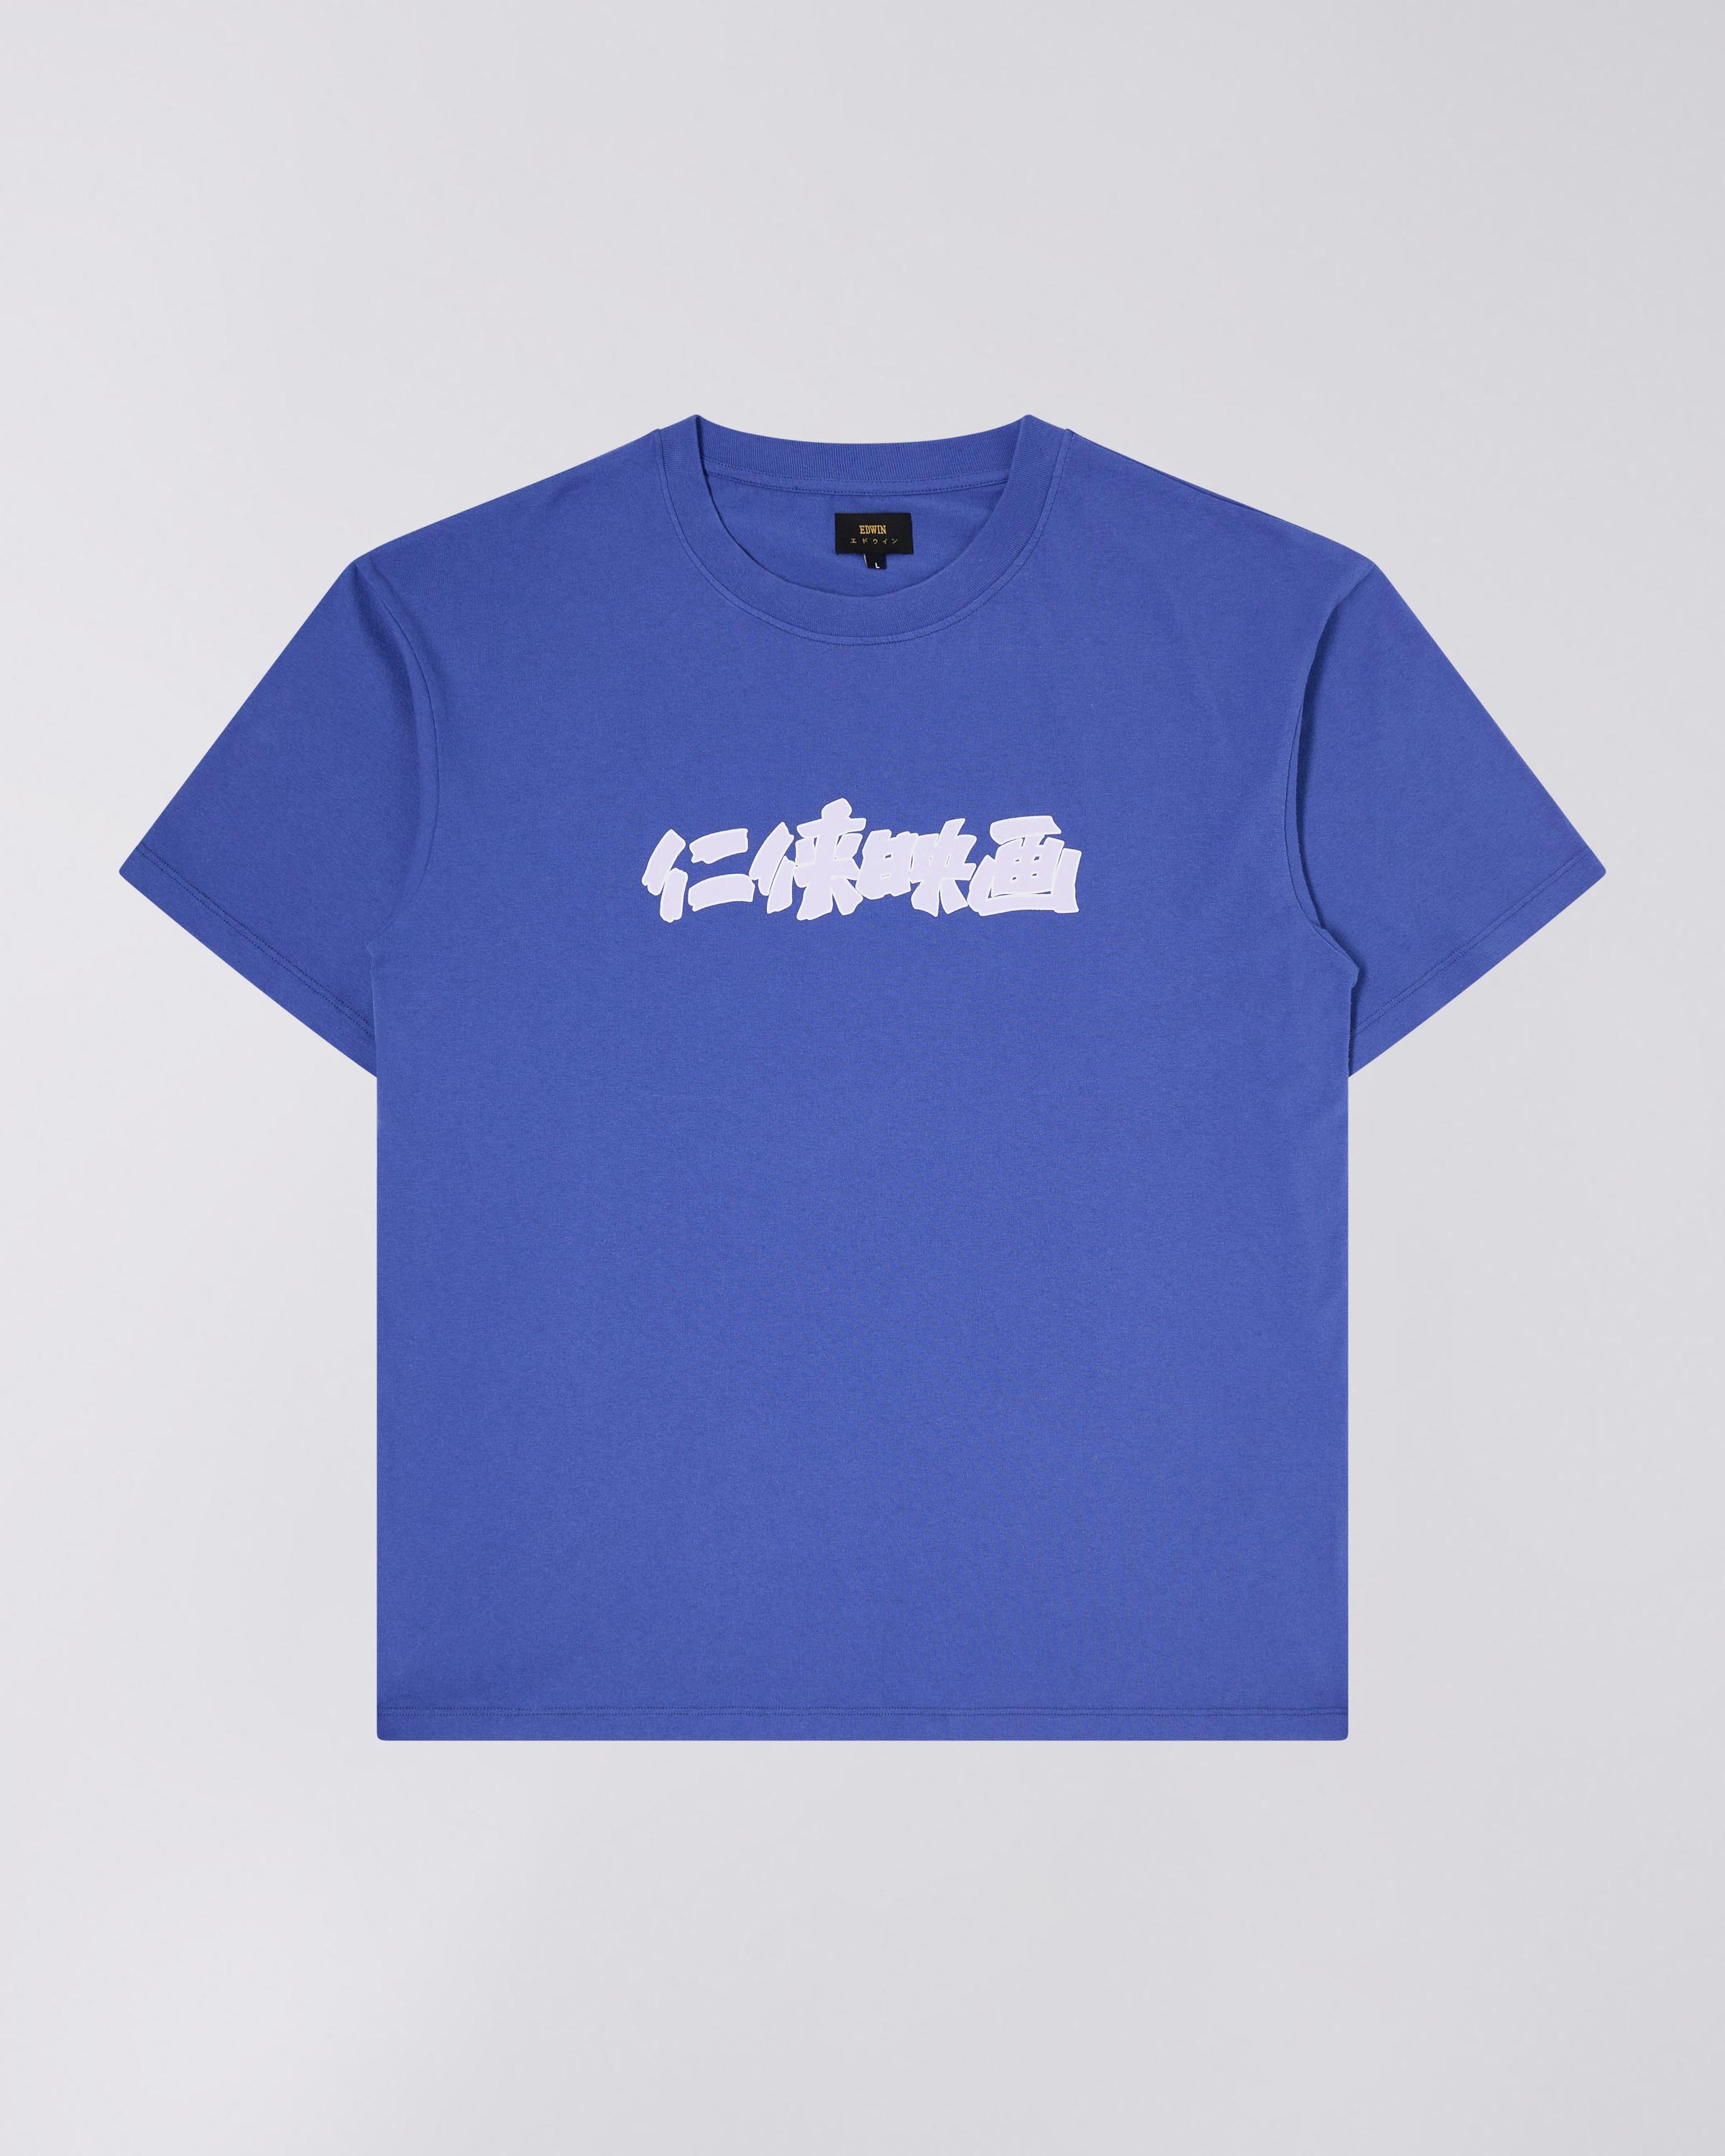 Ninkyo Eiga T-Shirt